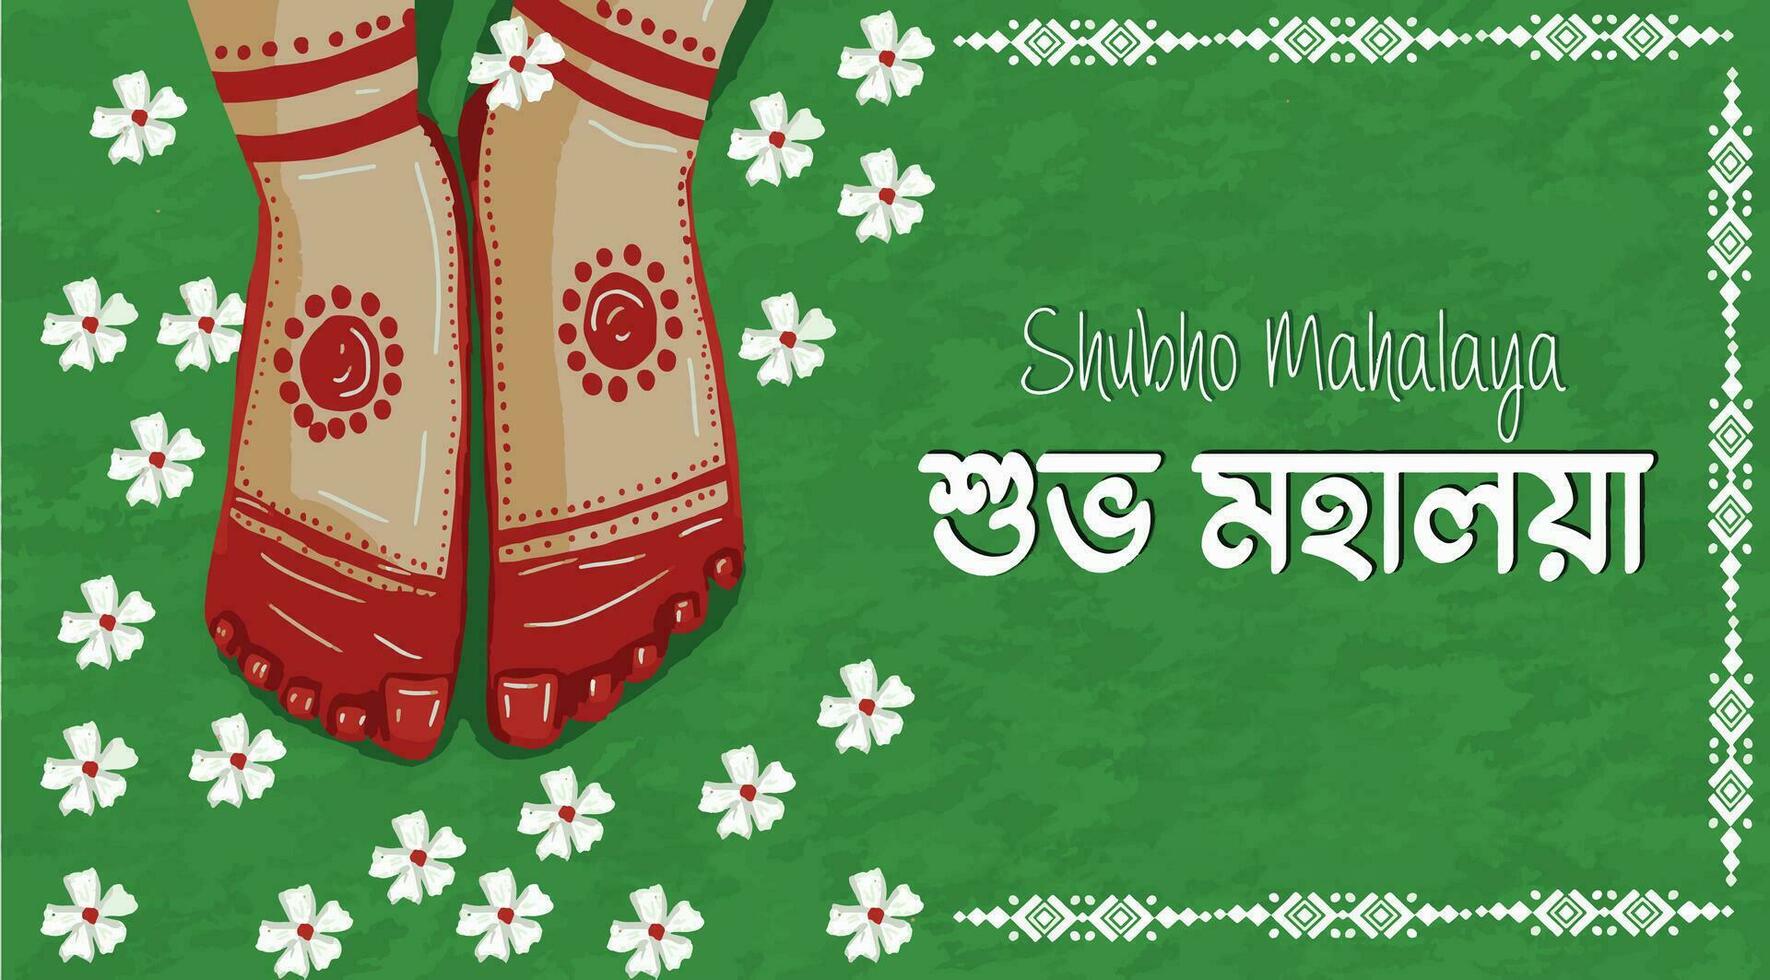 gelukkig mahalaya achtergrond. cultureel vakantie festiviteiten, gelukkig mahalaya poster.dit boeiend illustratie poster vangt de essence van shubho mahalaya, vector